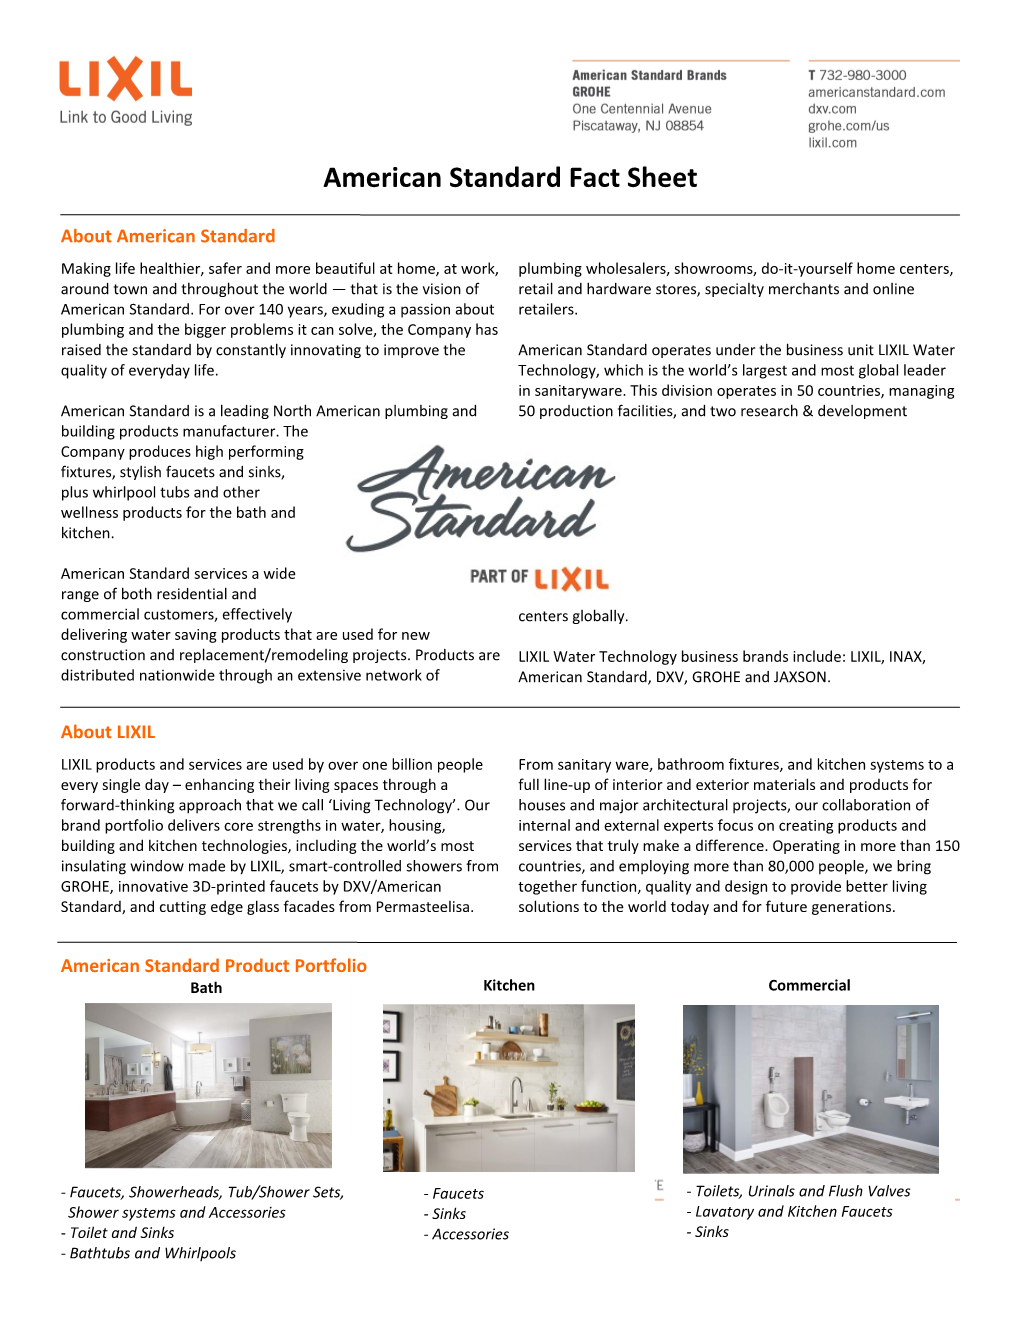 American Standard Fact Sheet